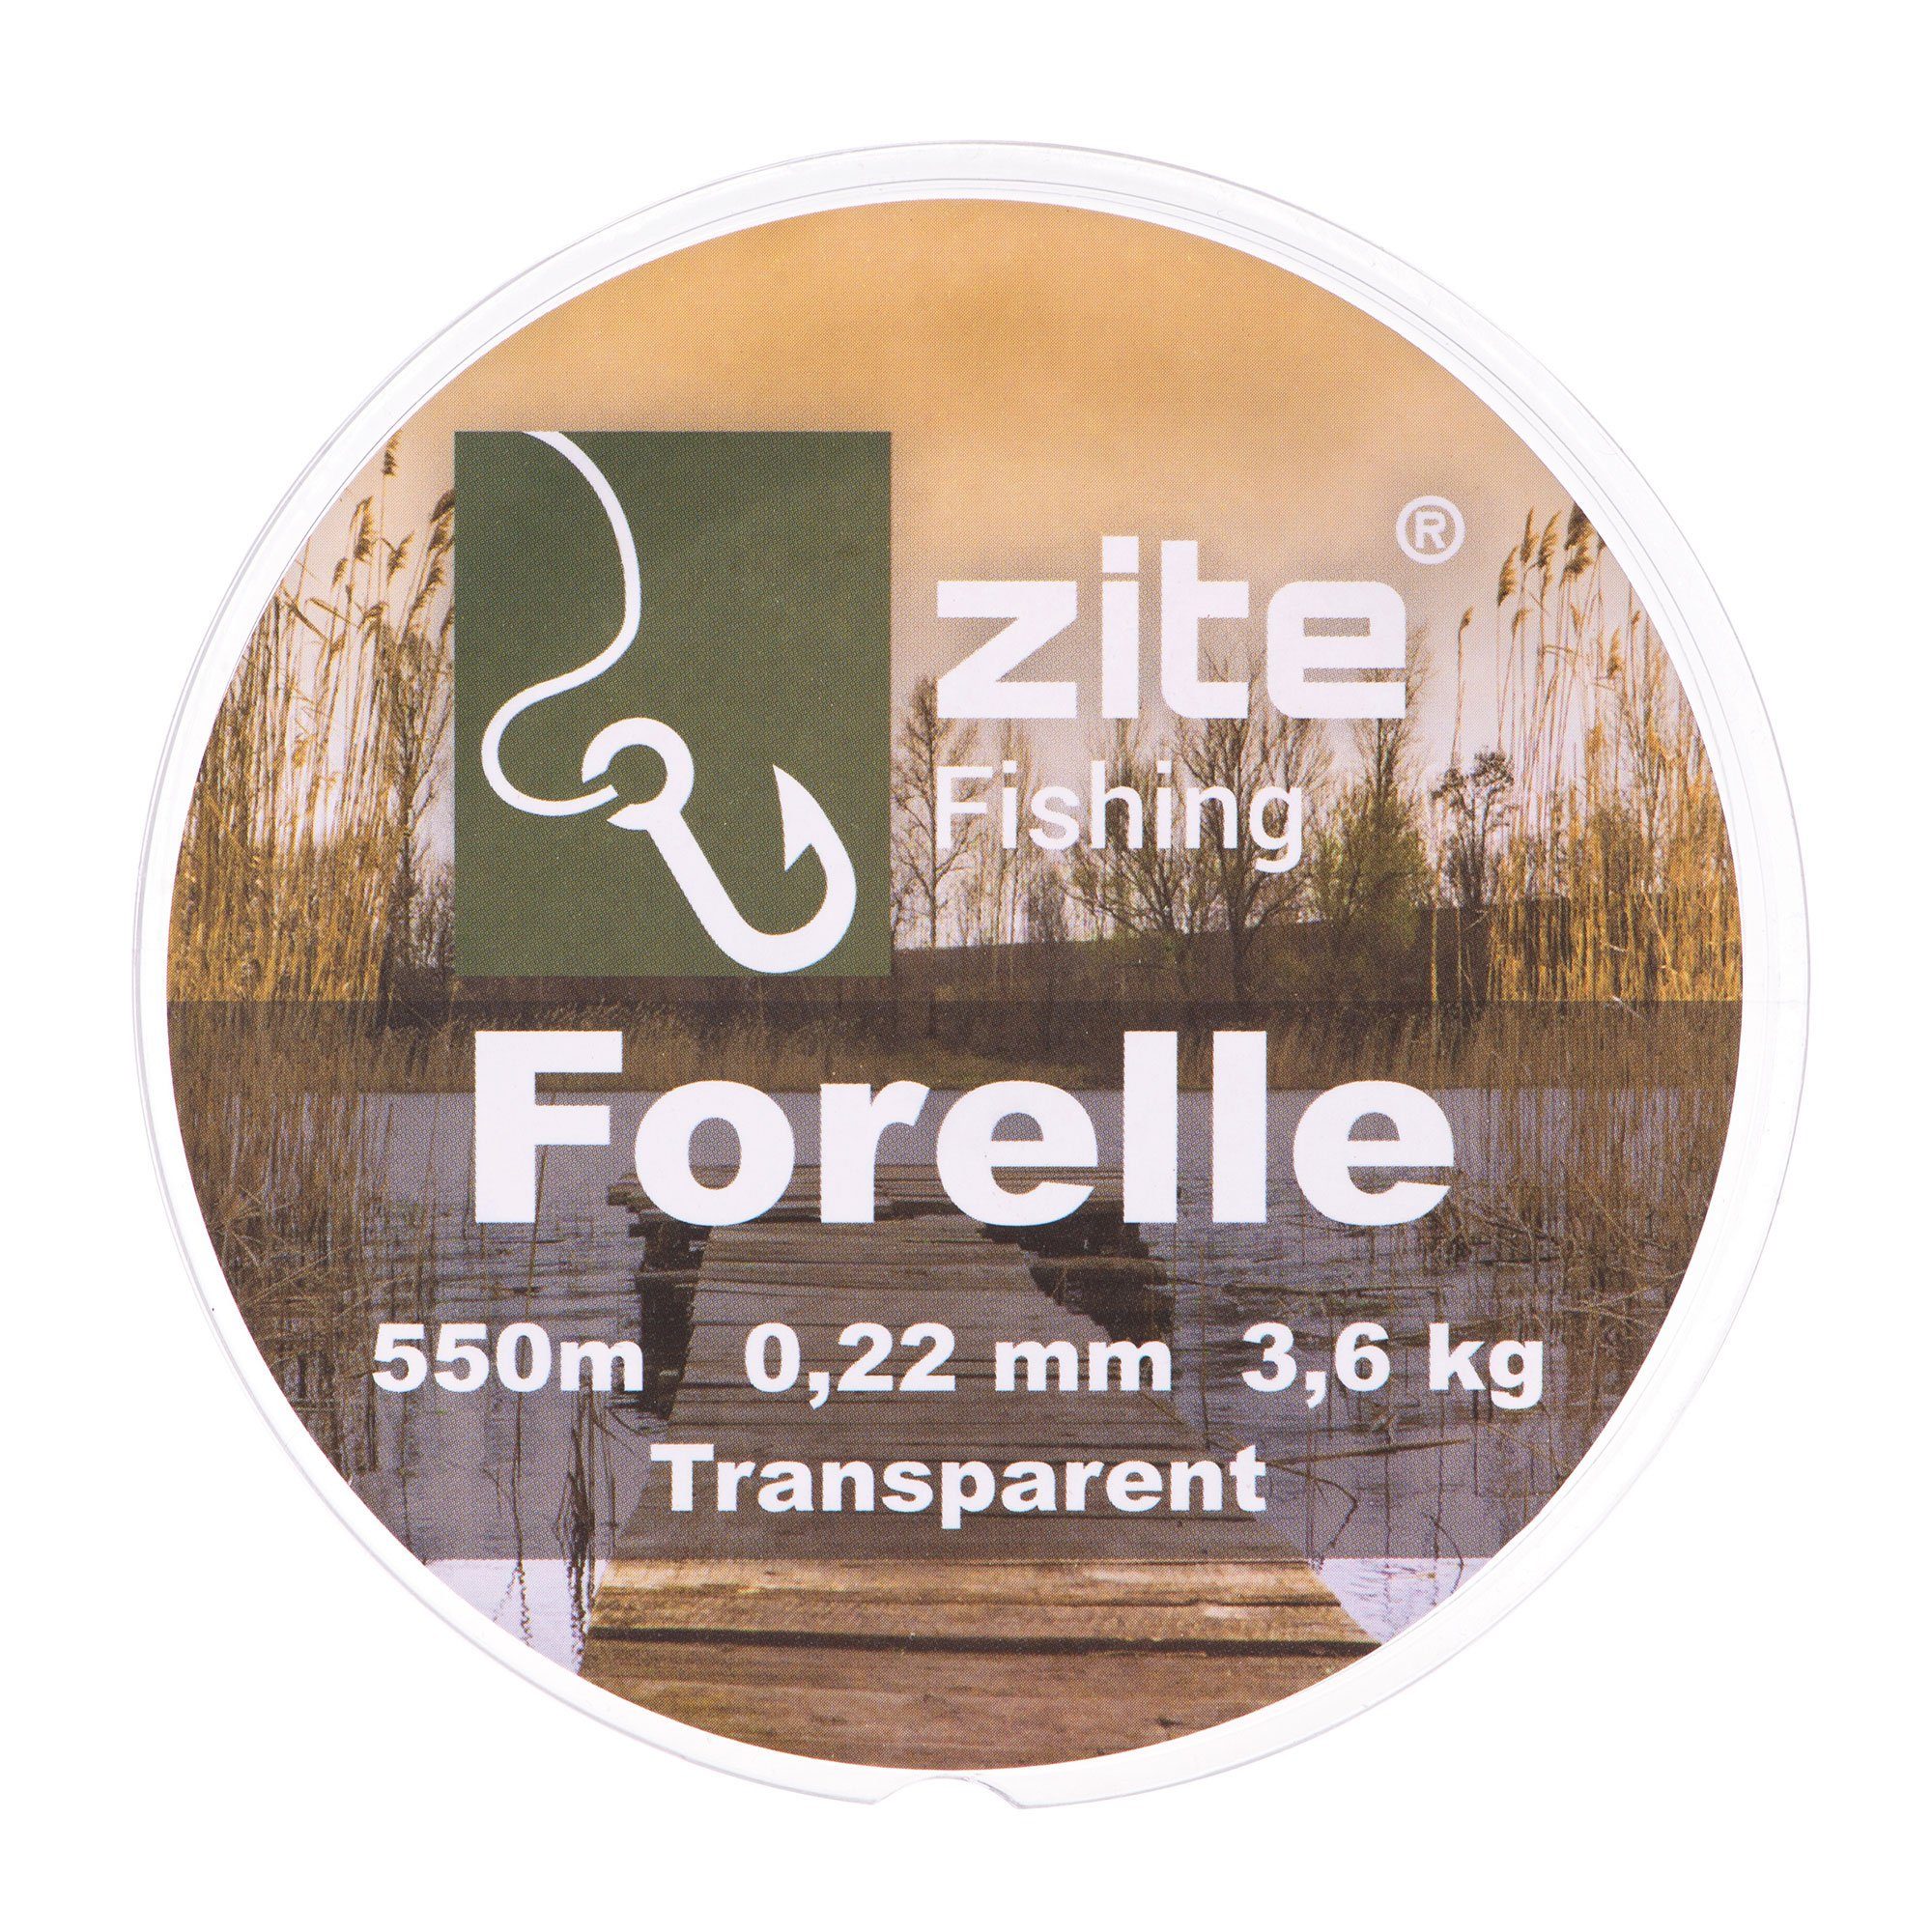 Zite Angelschnur 0,22 mm - Transparente 550 m Ansitz & Spinnfischen Forellenschnur